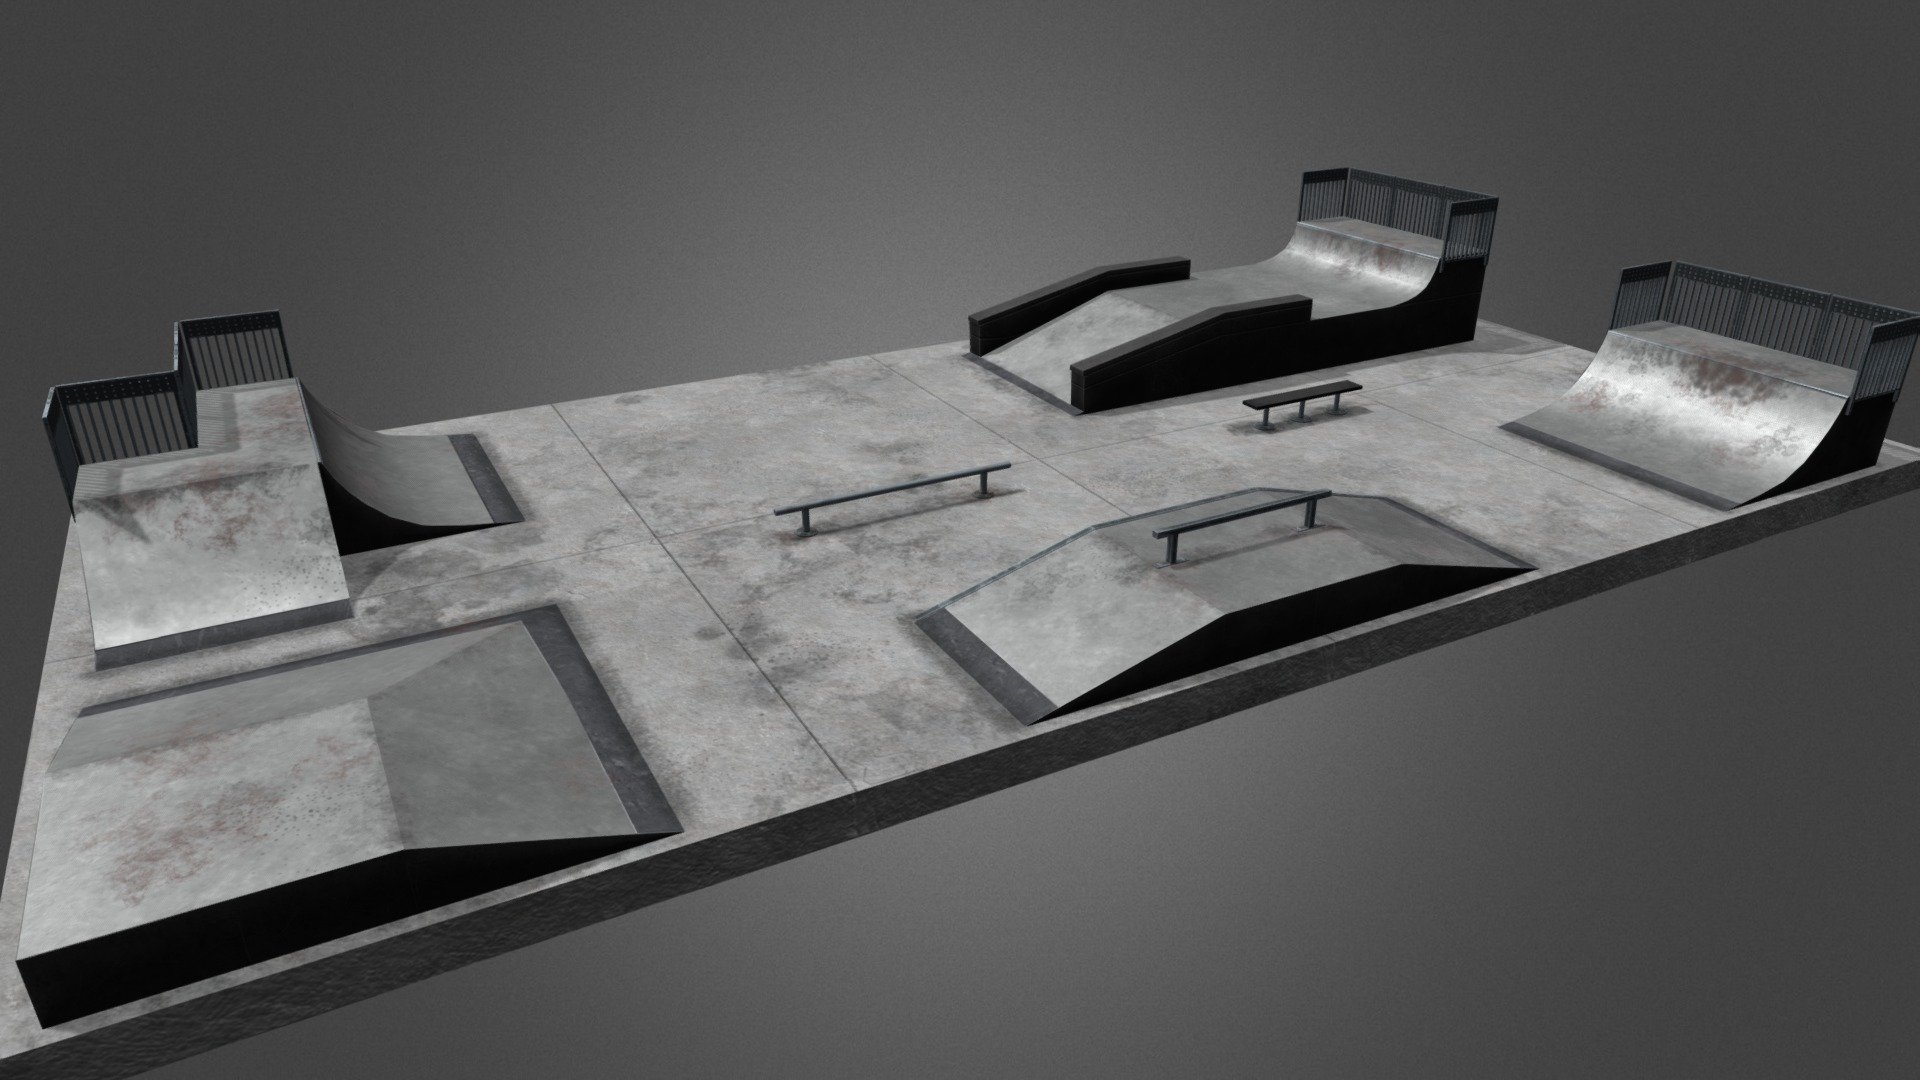 This is a skate park based on Barber Park in Orlando Florida - Barber Park Skate Park - 3D model by Noah_Goyette 3d model